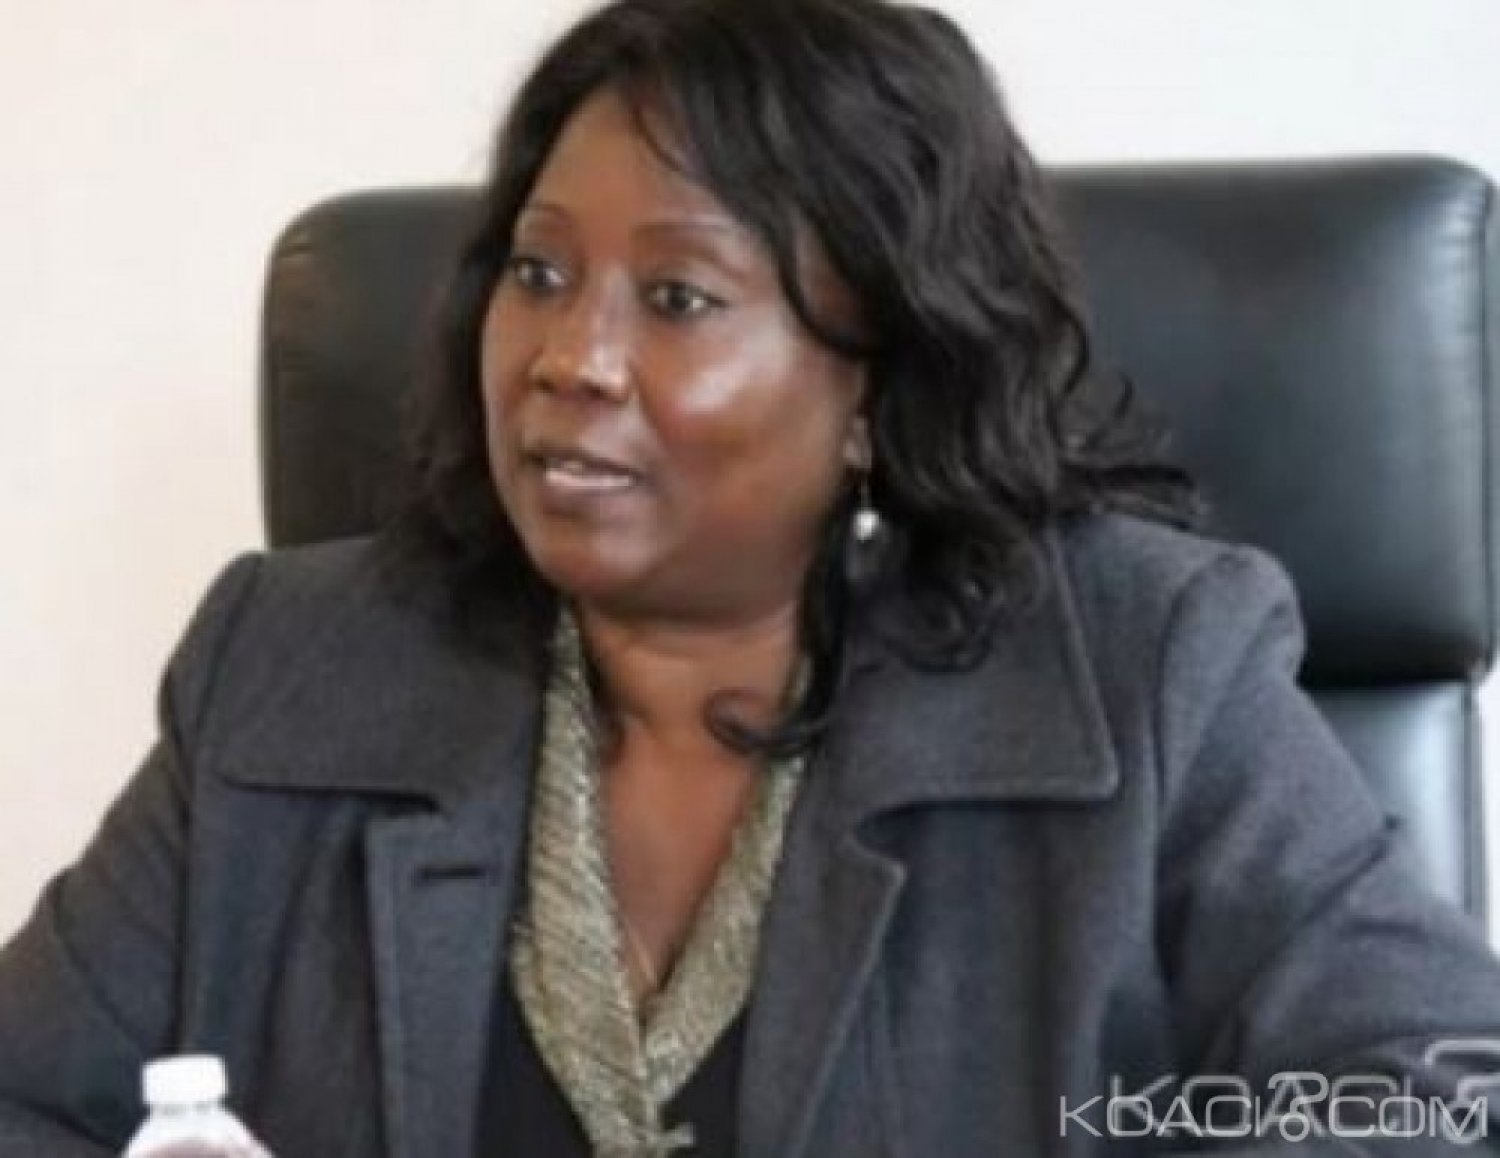 Zambie : Une ancienne ministre arrêtée pour des soupçons de corruption